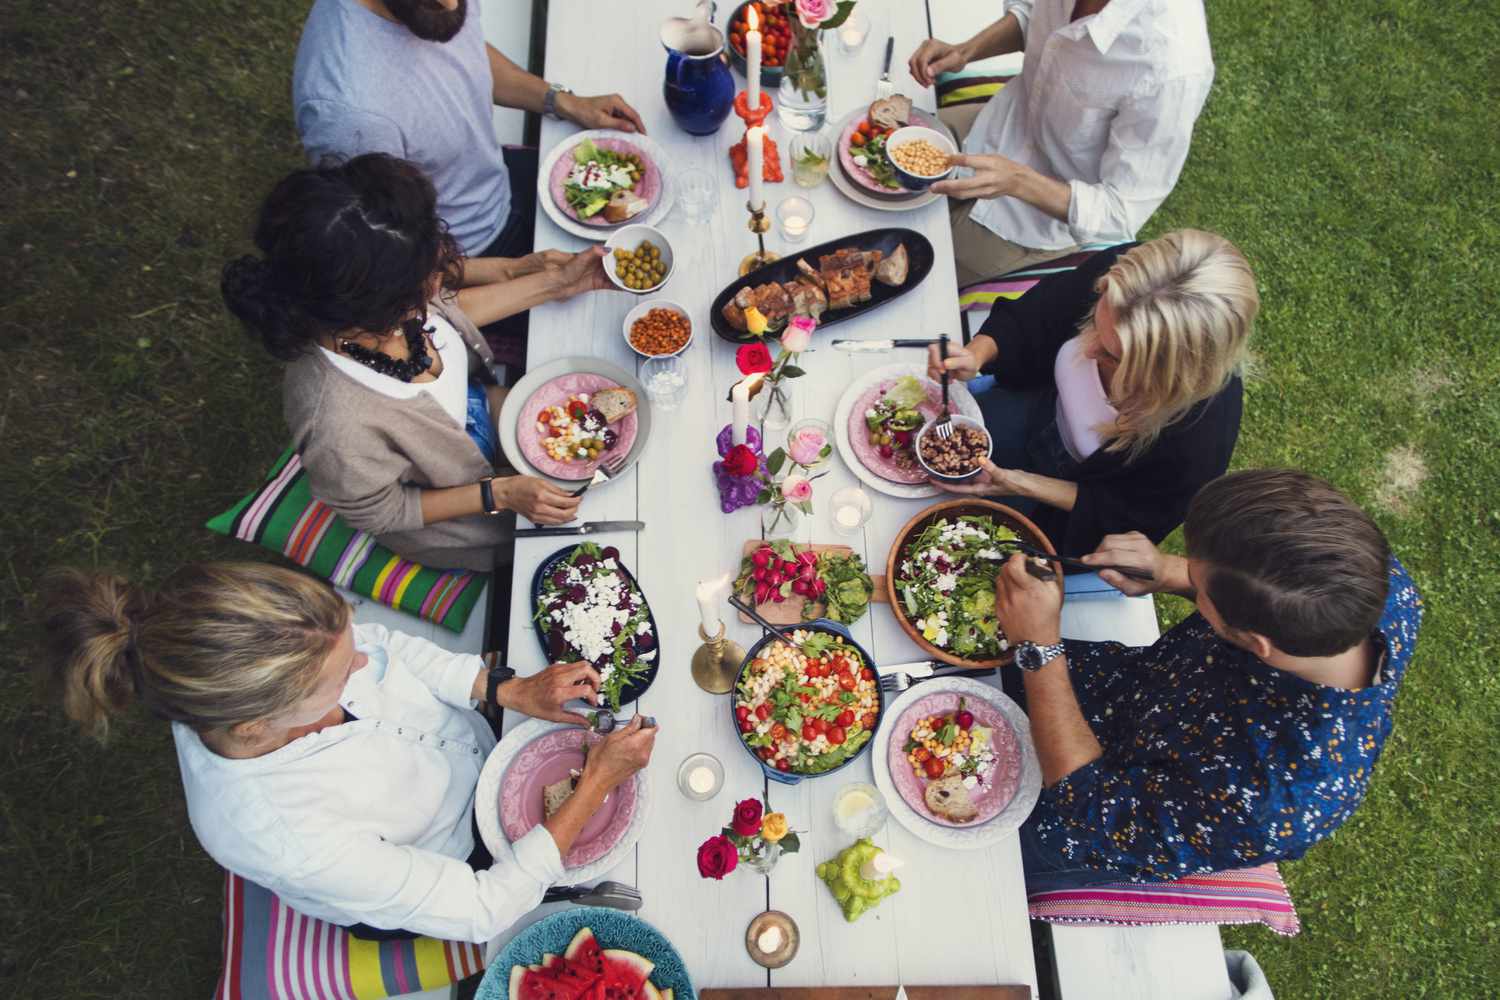 Amigos sentados em uma longa mesa compartilhando uma refeição ao ar livre